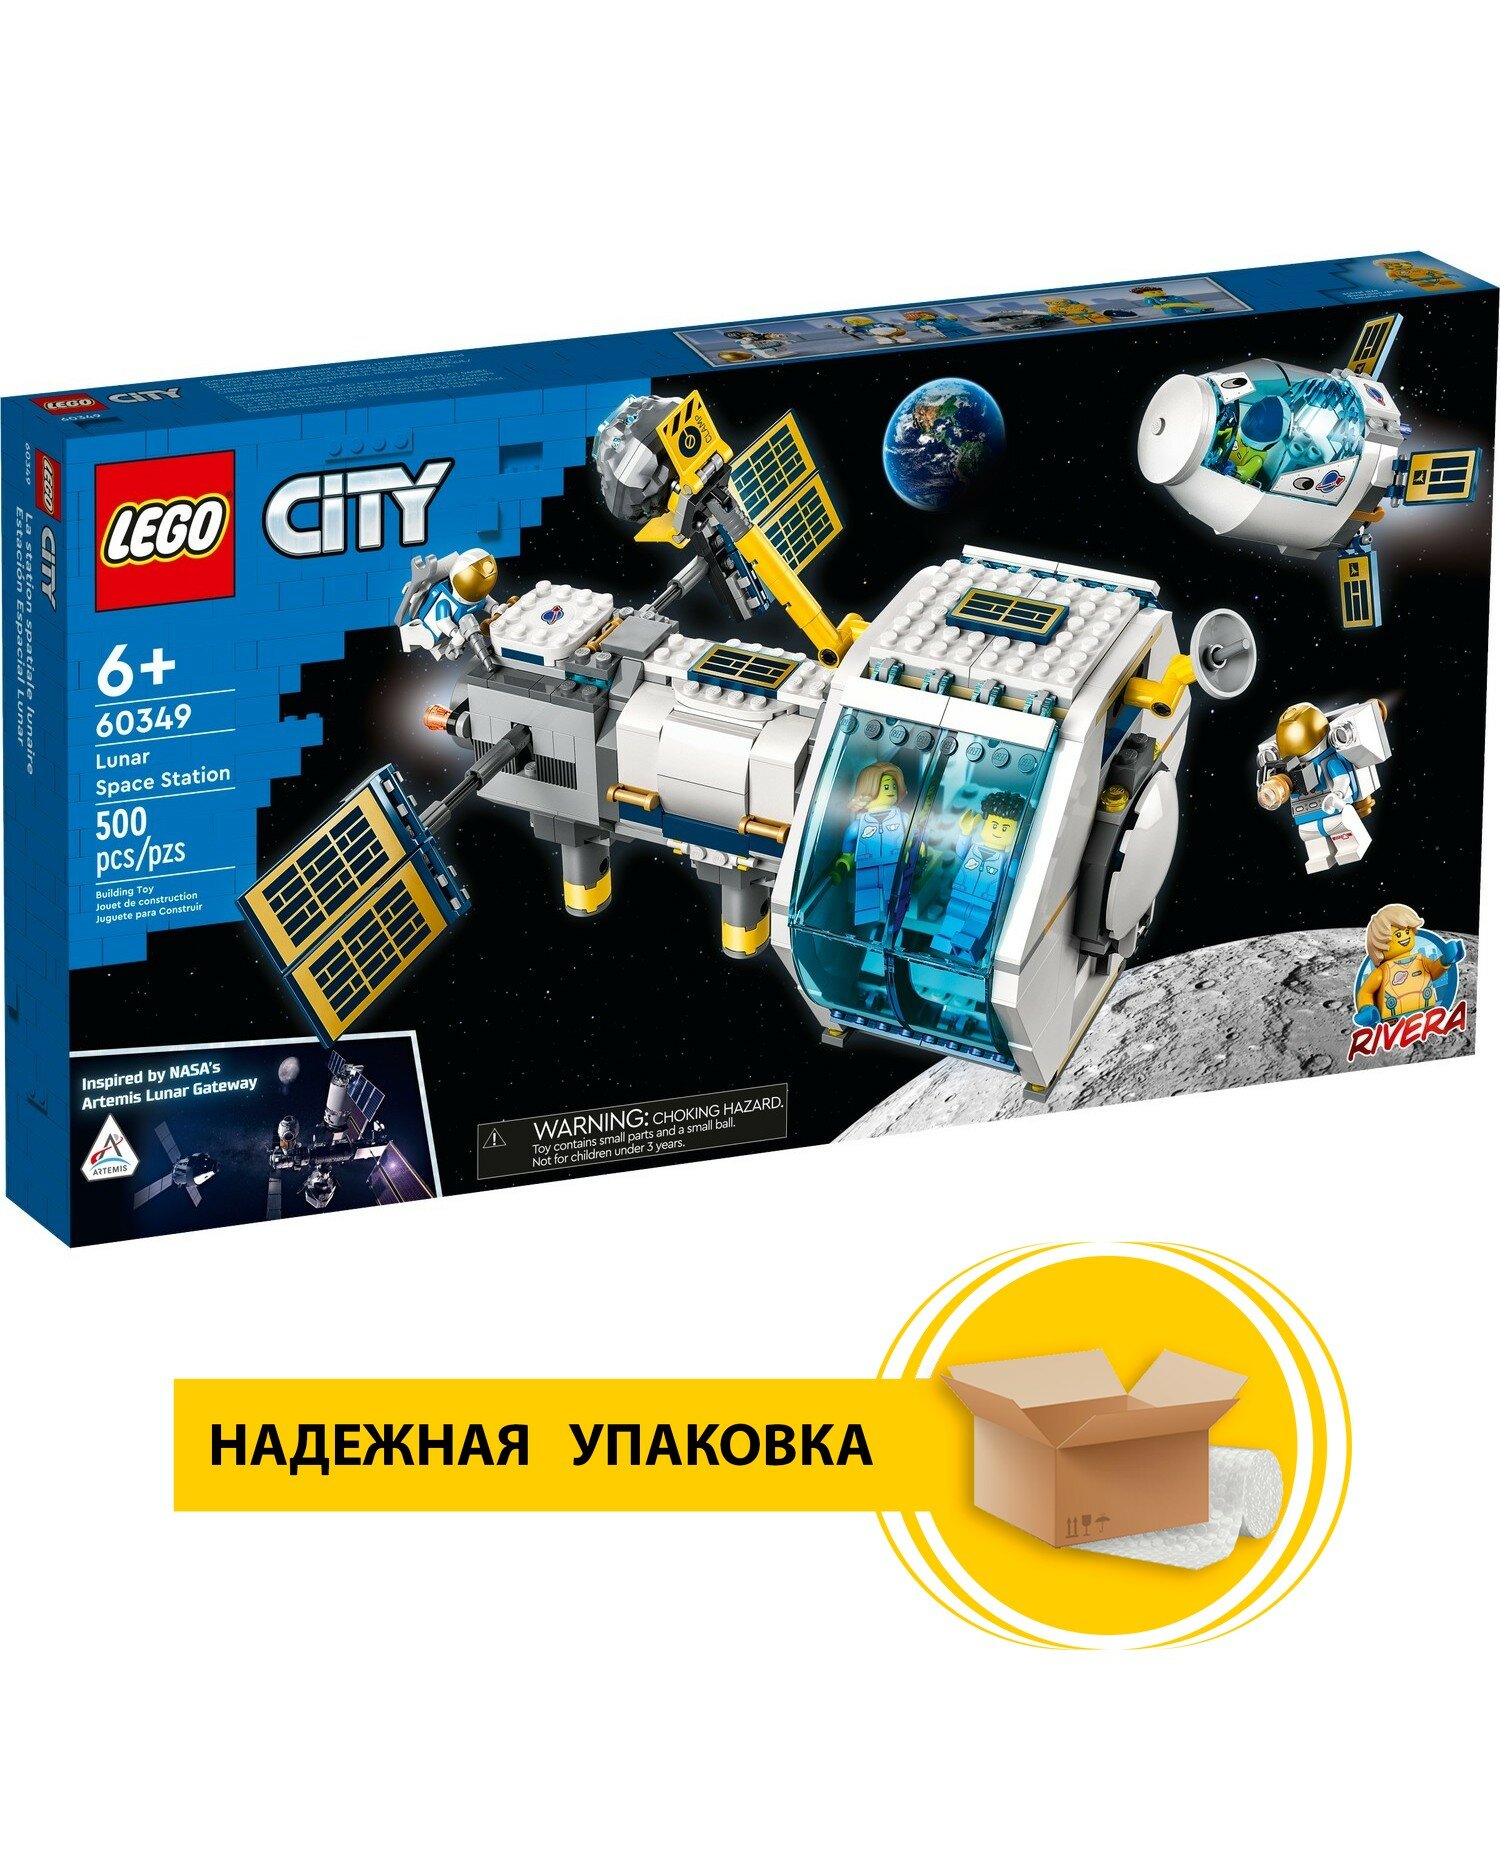 Конструктор LEGO CITY 60349 Лунная космическая станция, 500 дет.